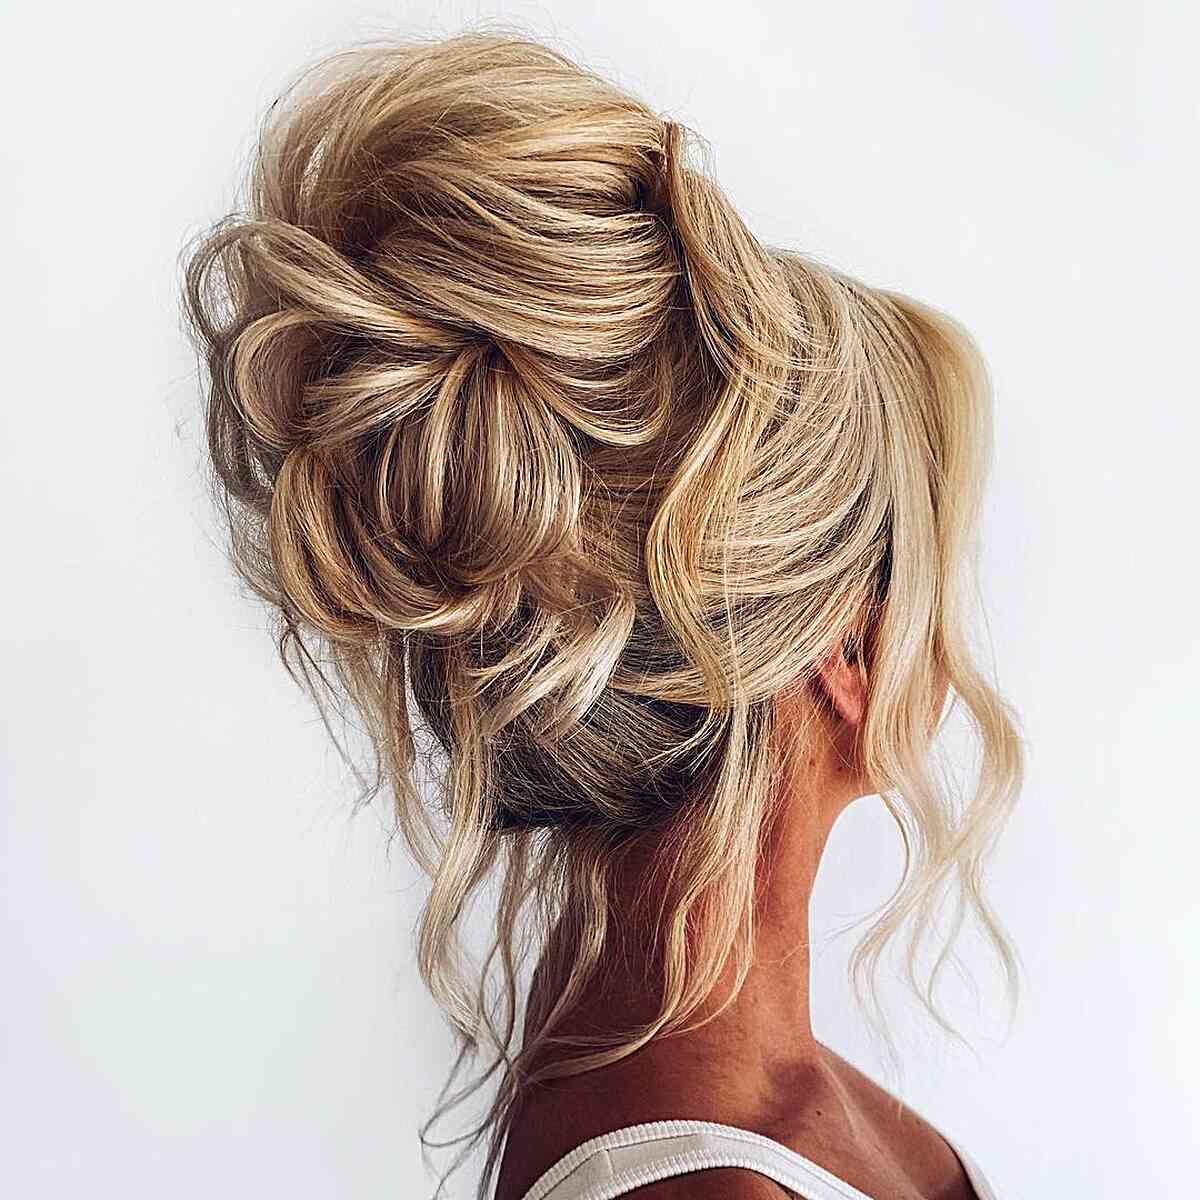 Penteado simples para uma noiva com cabelos compridos